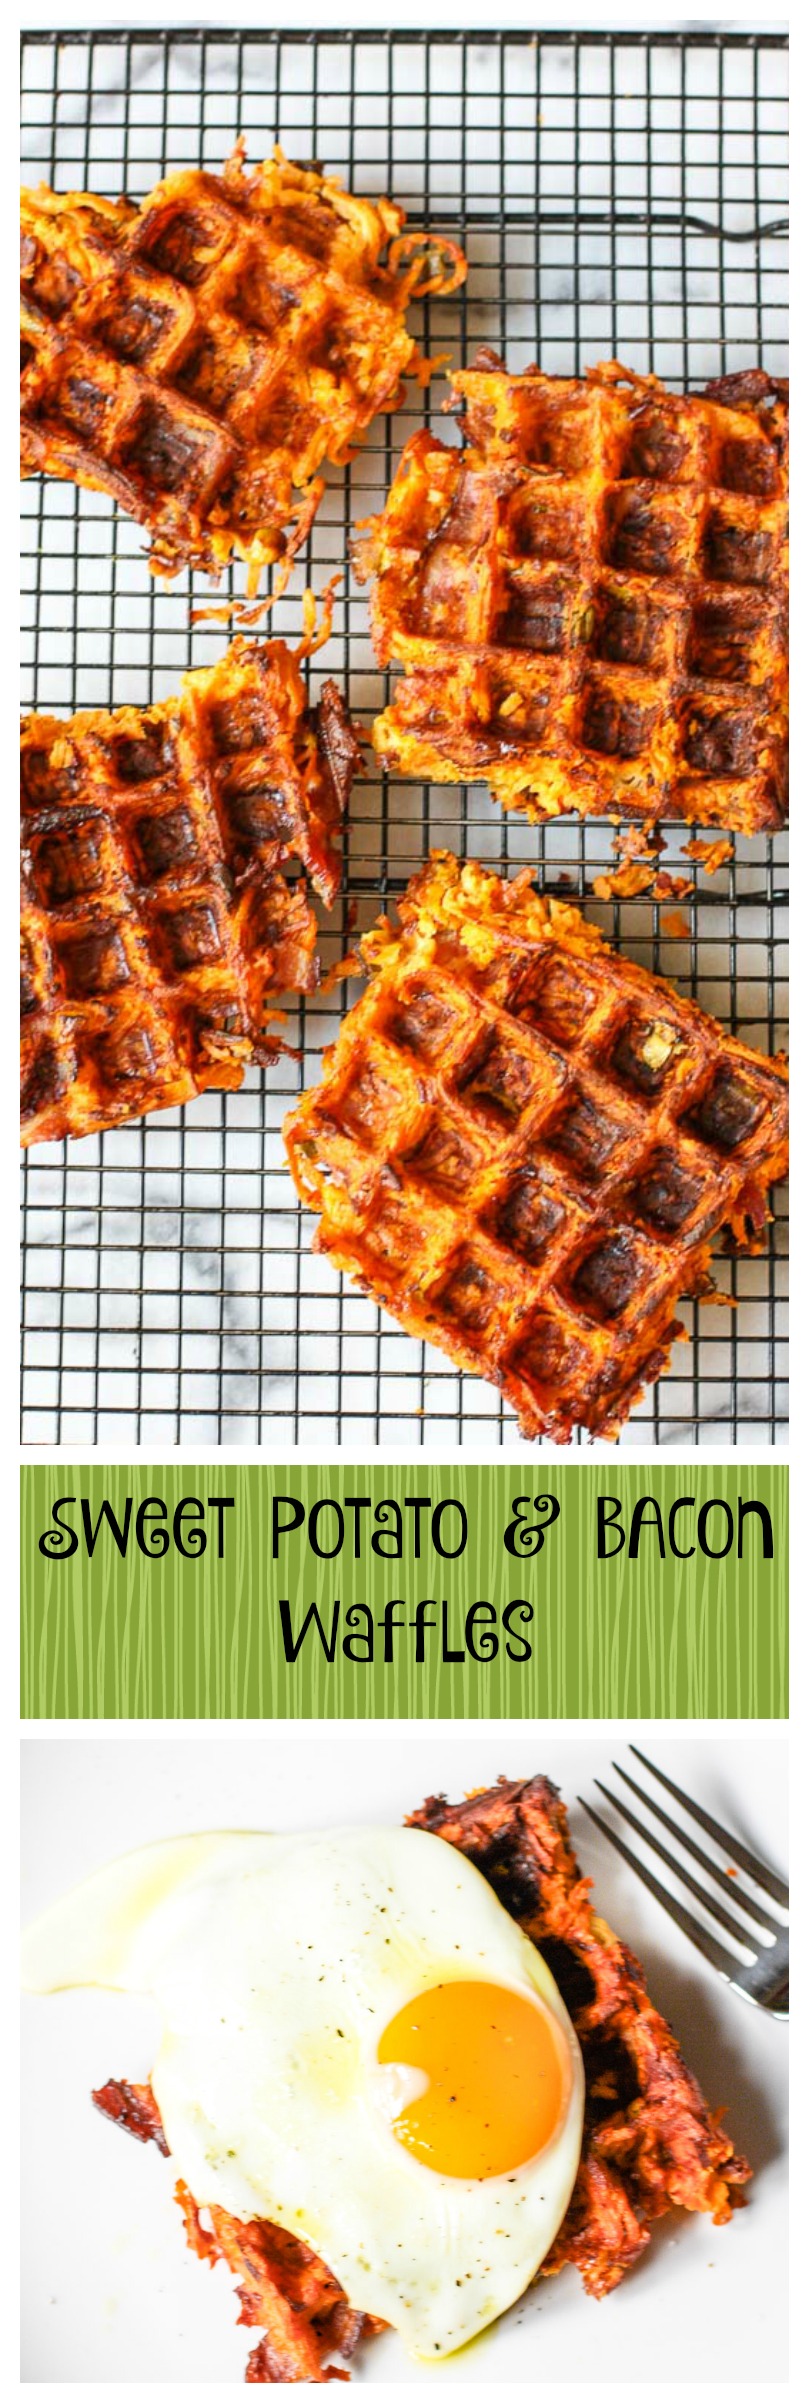 sweet potato bacon waffles